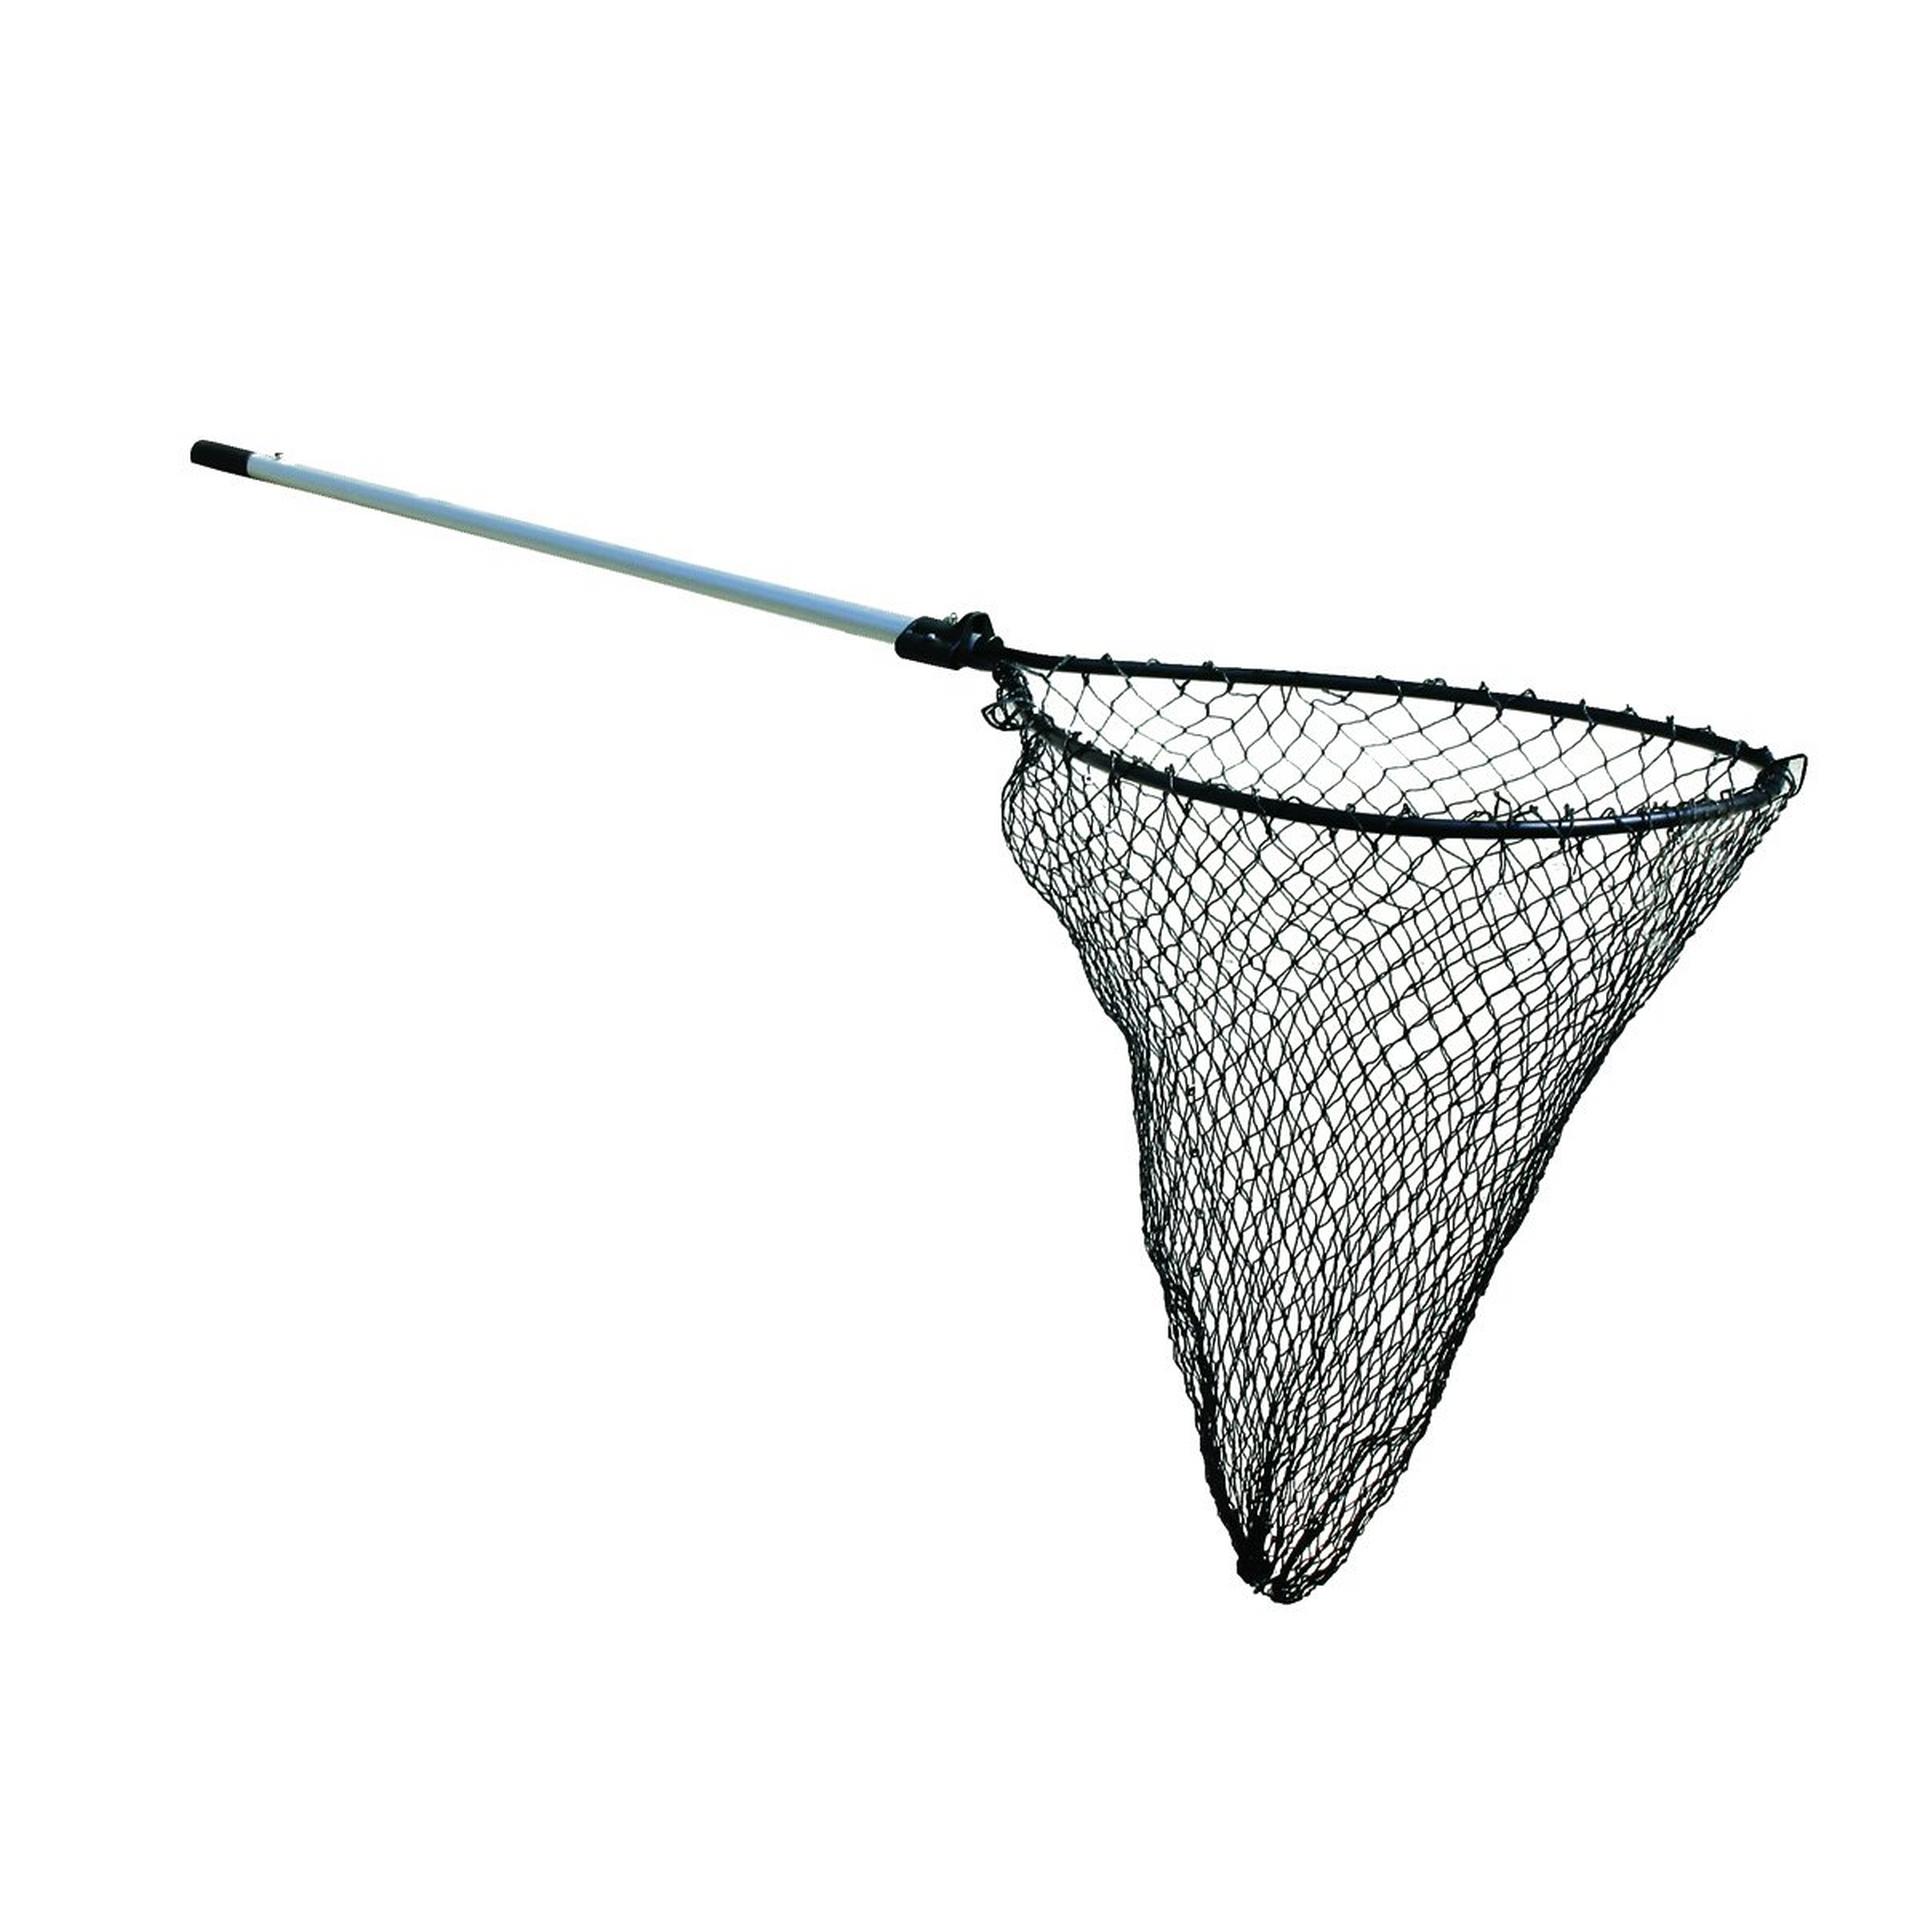 Pro-Formance Fishing Net, Best Nets